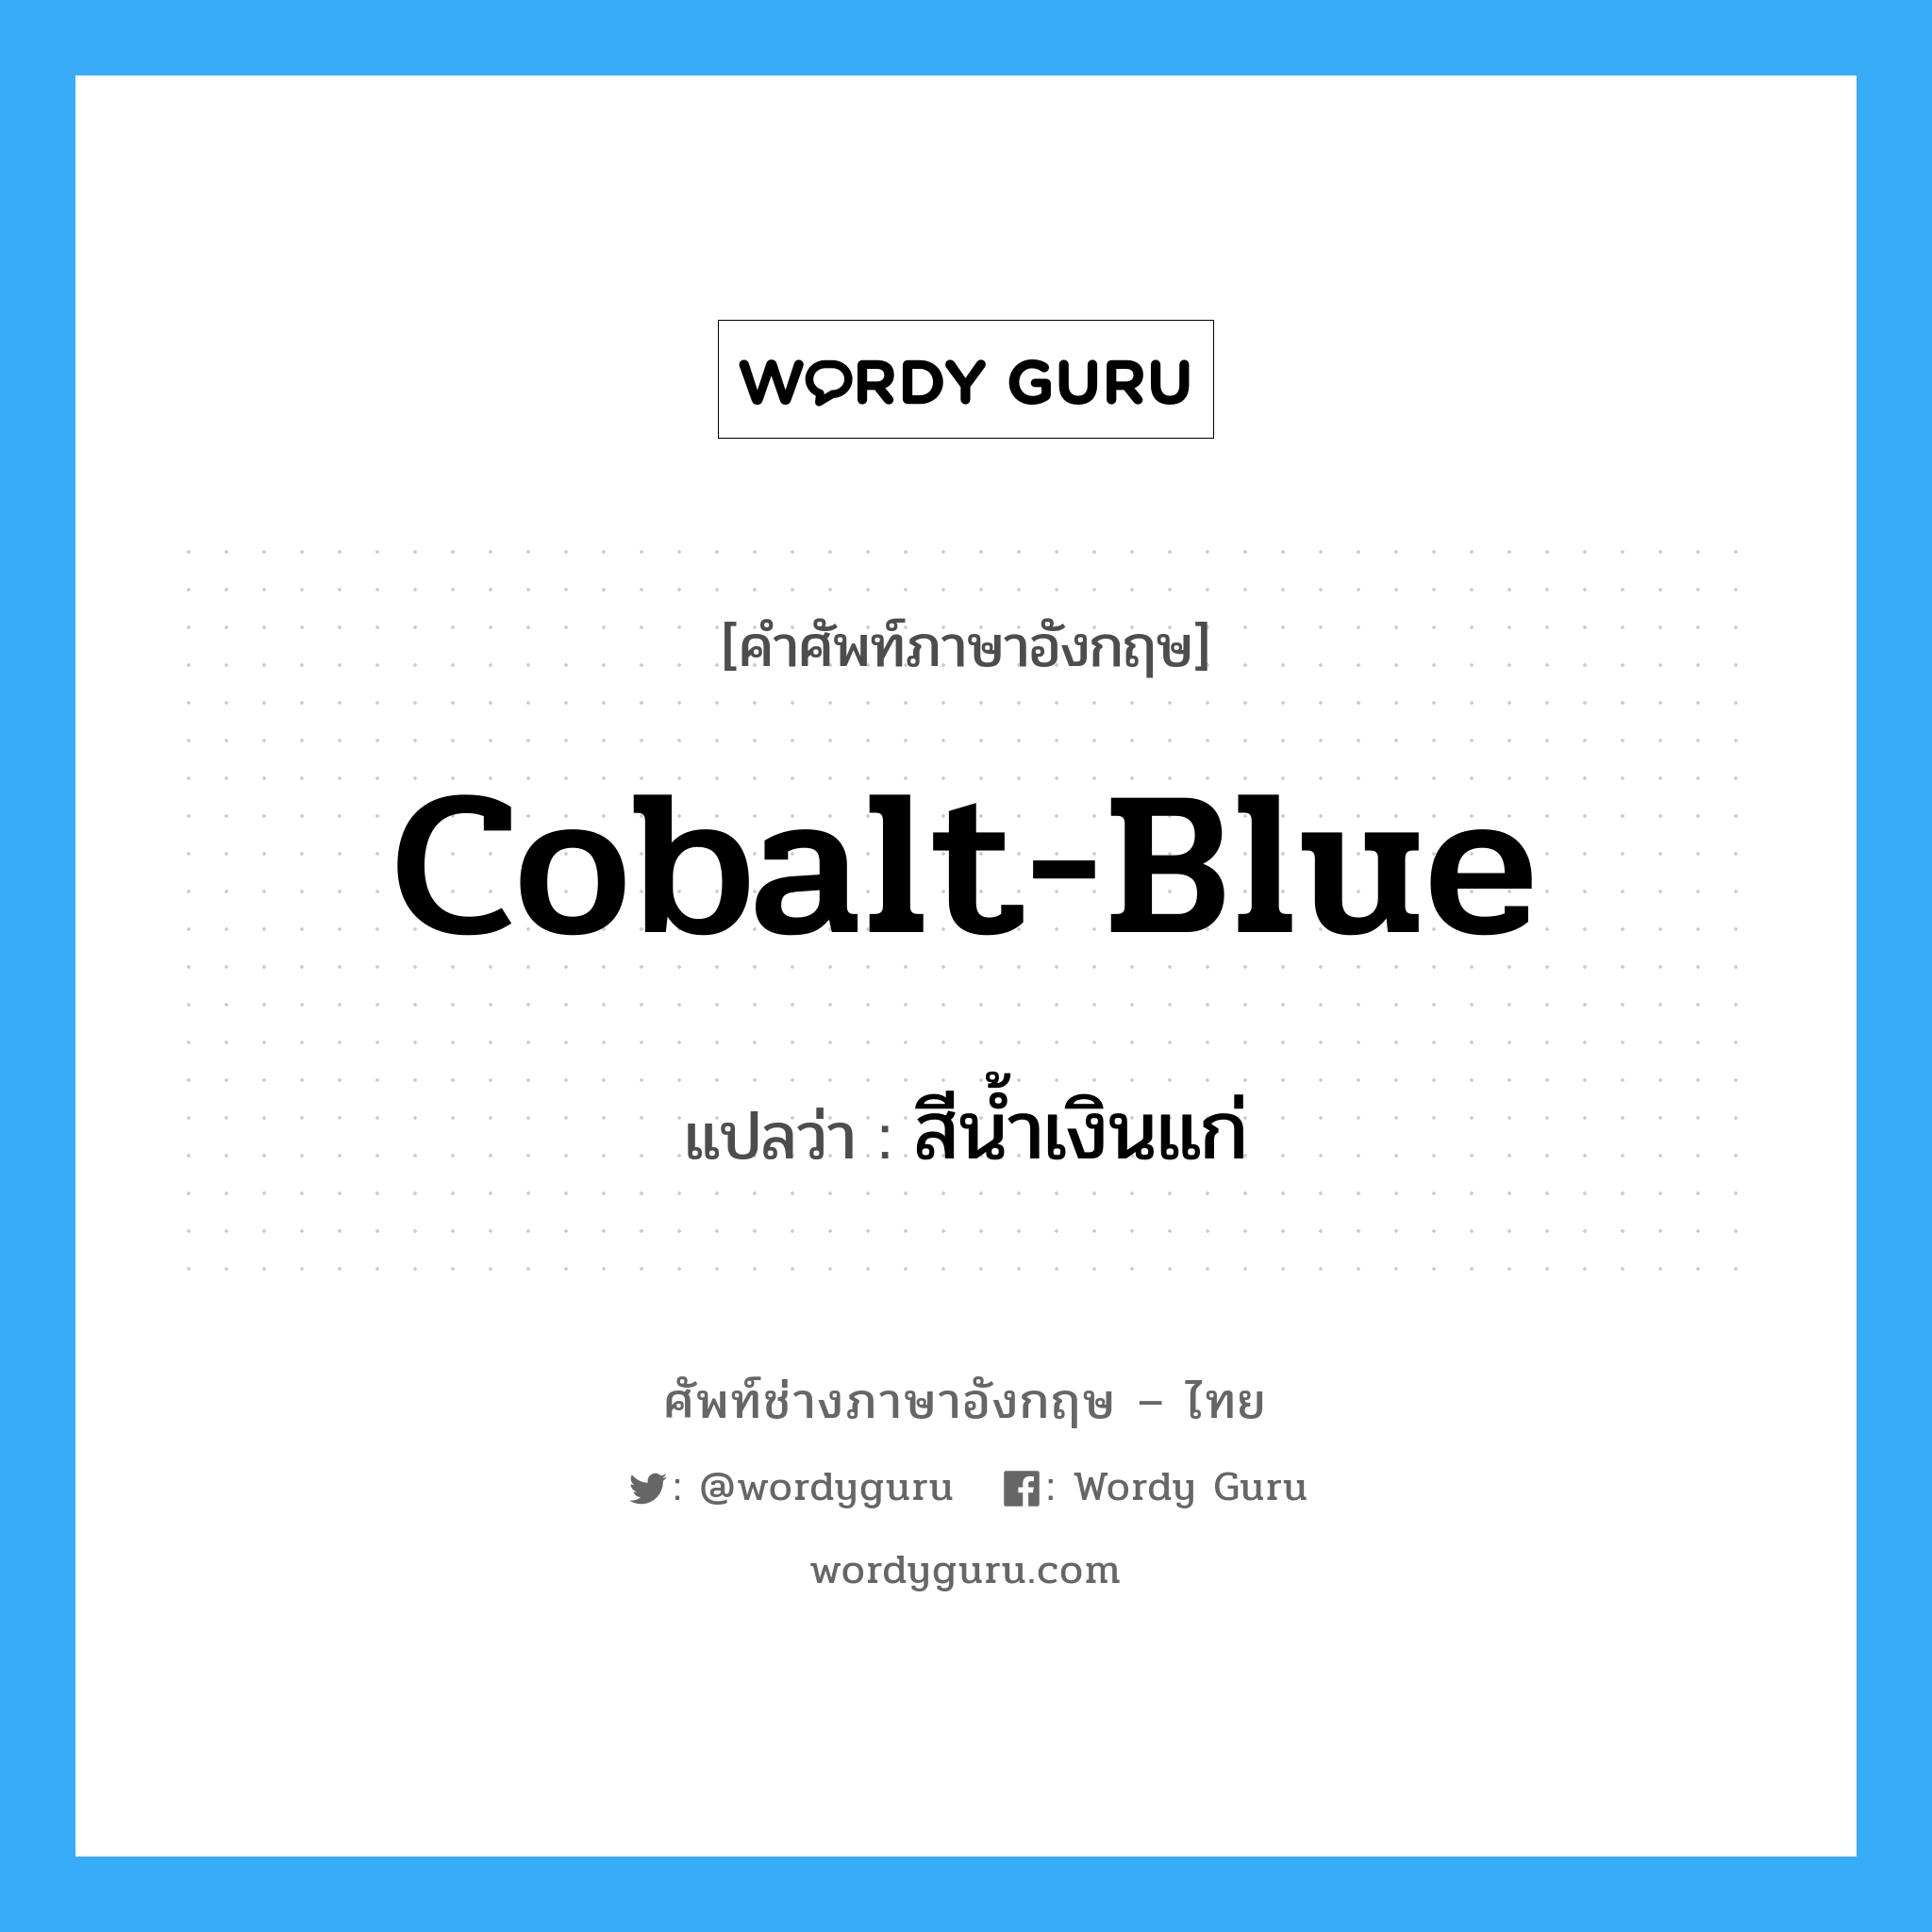 cobalt blue แปลว่า?, คำศัพท์ช่างภาษาอังกฤษ - ไทย cobalt-blue คำศัพท์ภาษาอังกฤษ cobalt-blue แปลว่า สีน้ำเงินแก่